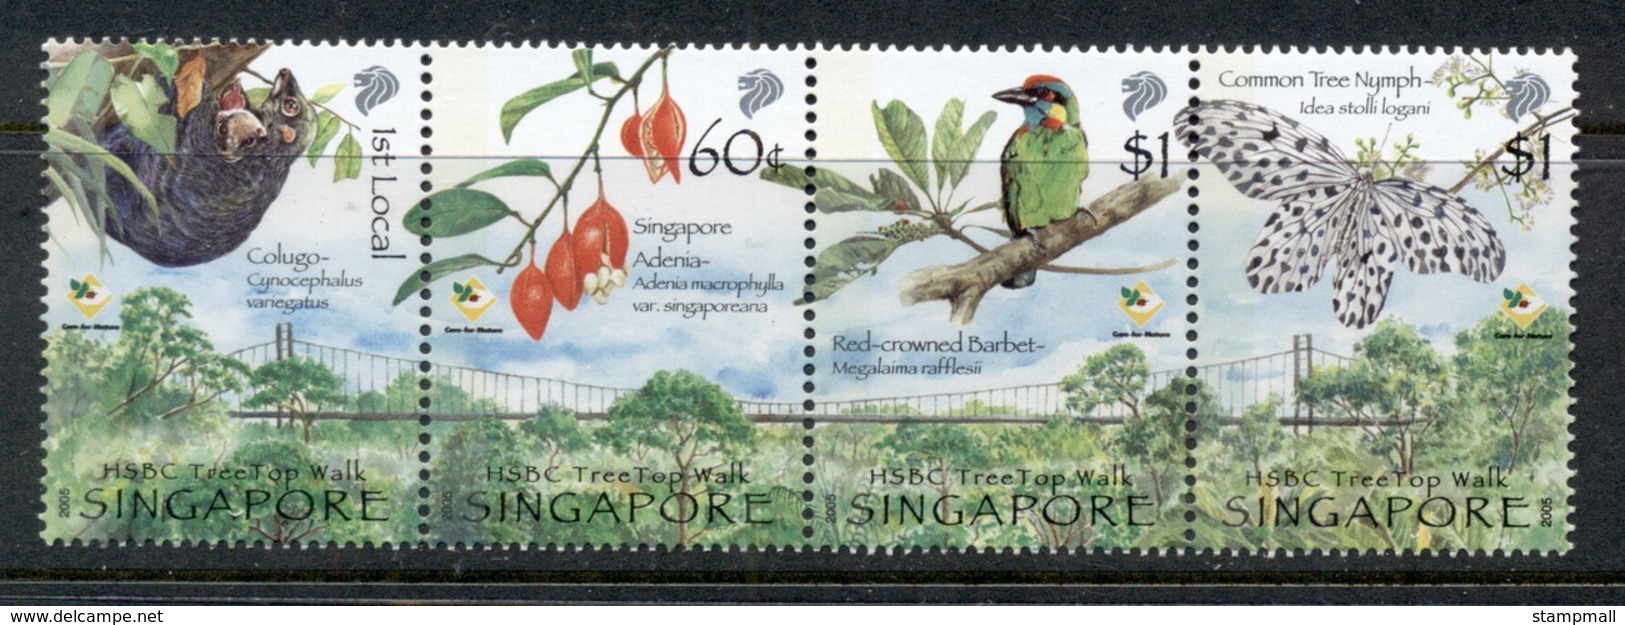 Singapore 2005 HSBC Tree Top Walk Str4 MUH - Singapore (1959-...)